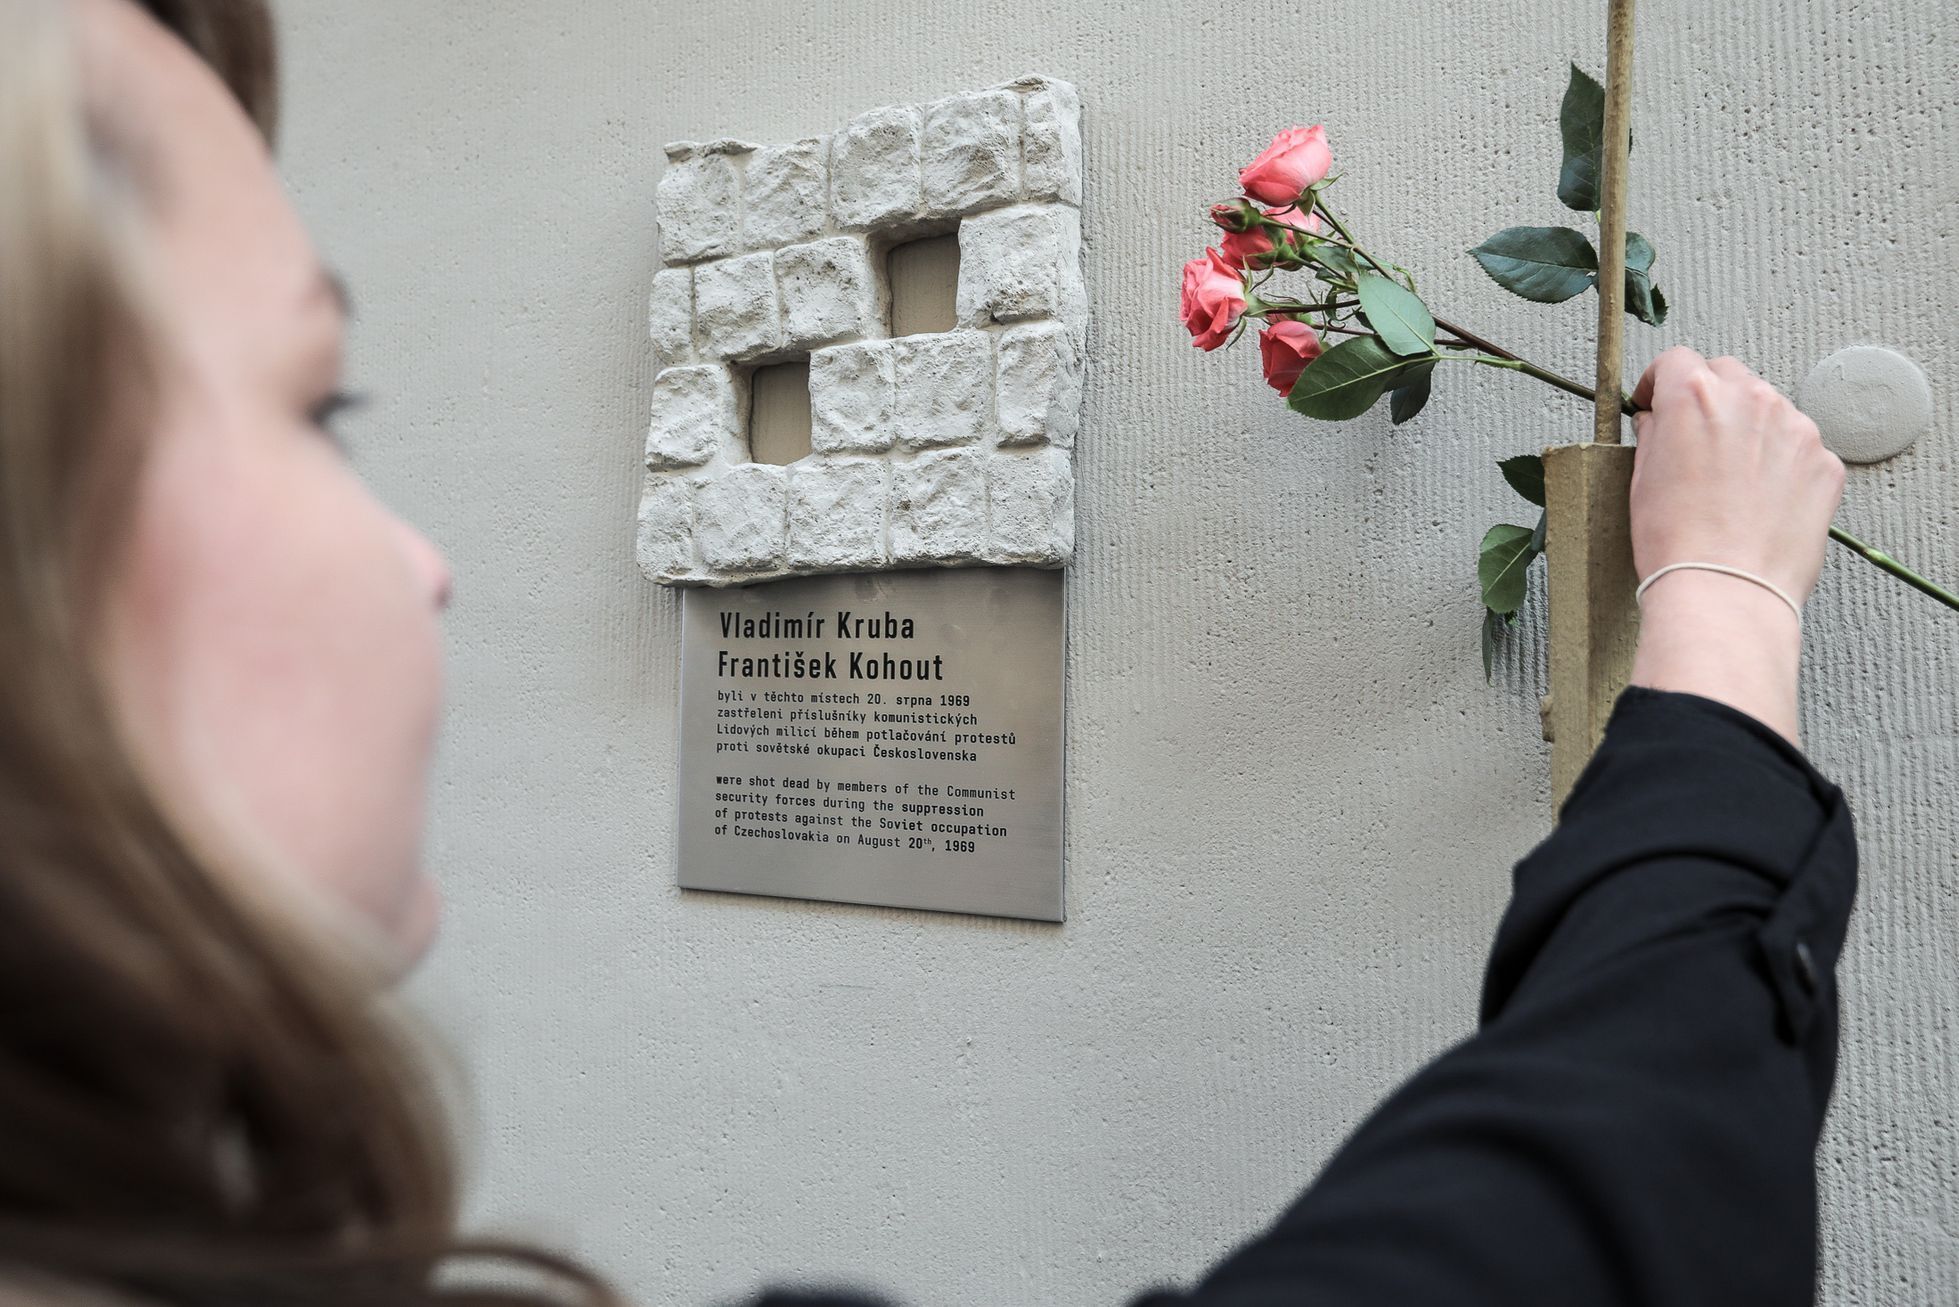 Pietní akce připomínající 21. srpna 1968 - odhalení pamětní desky Františka Kohouta a Vladimíra Kruby